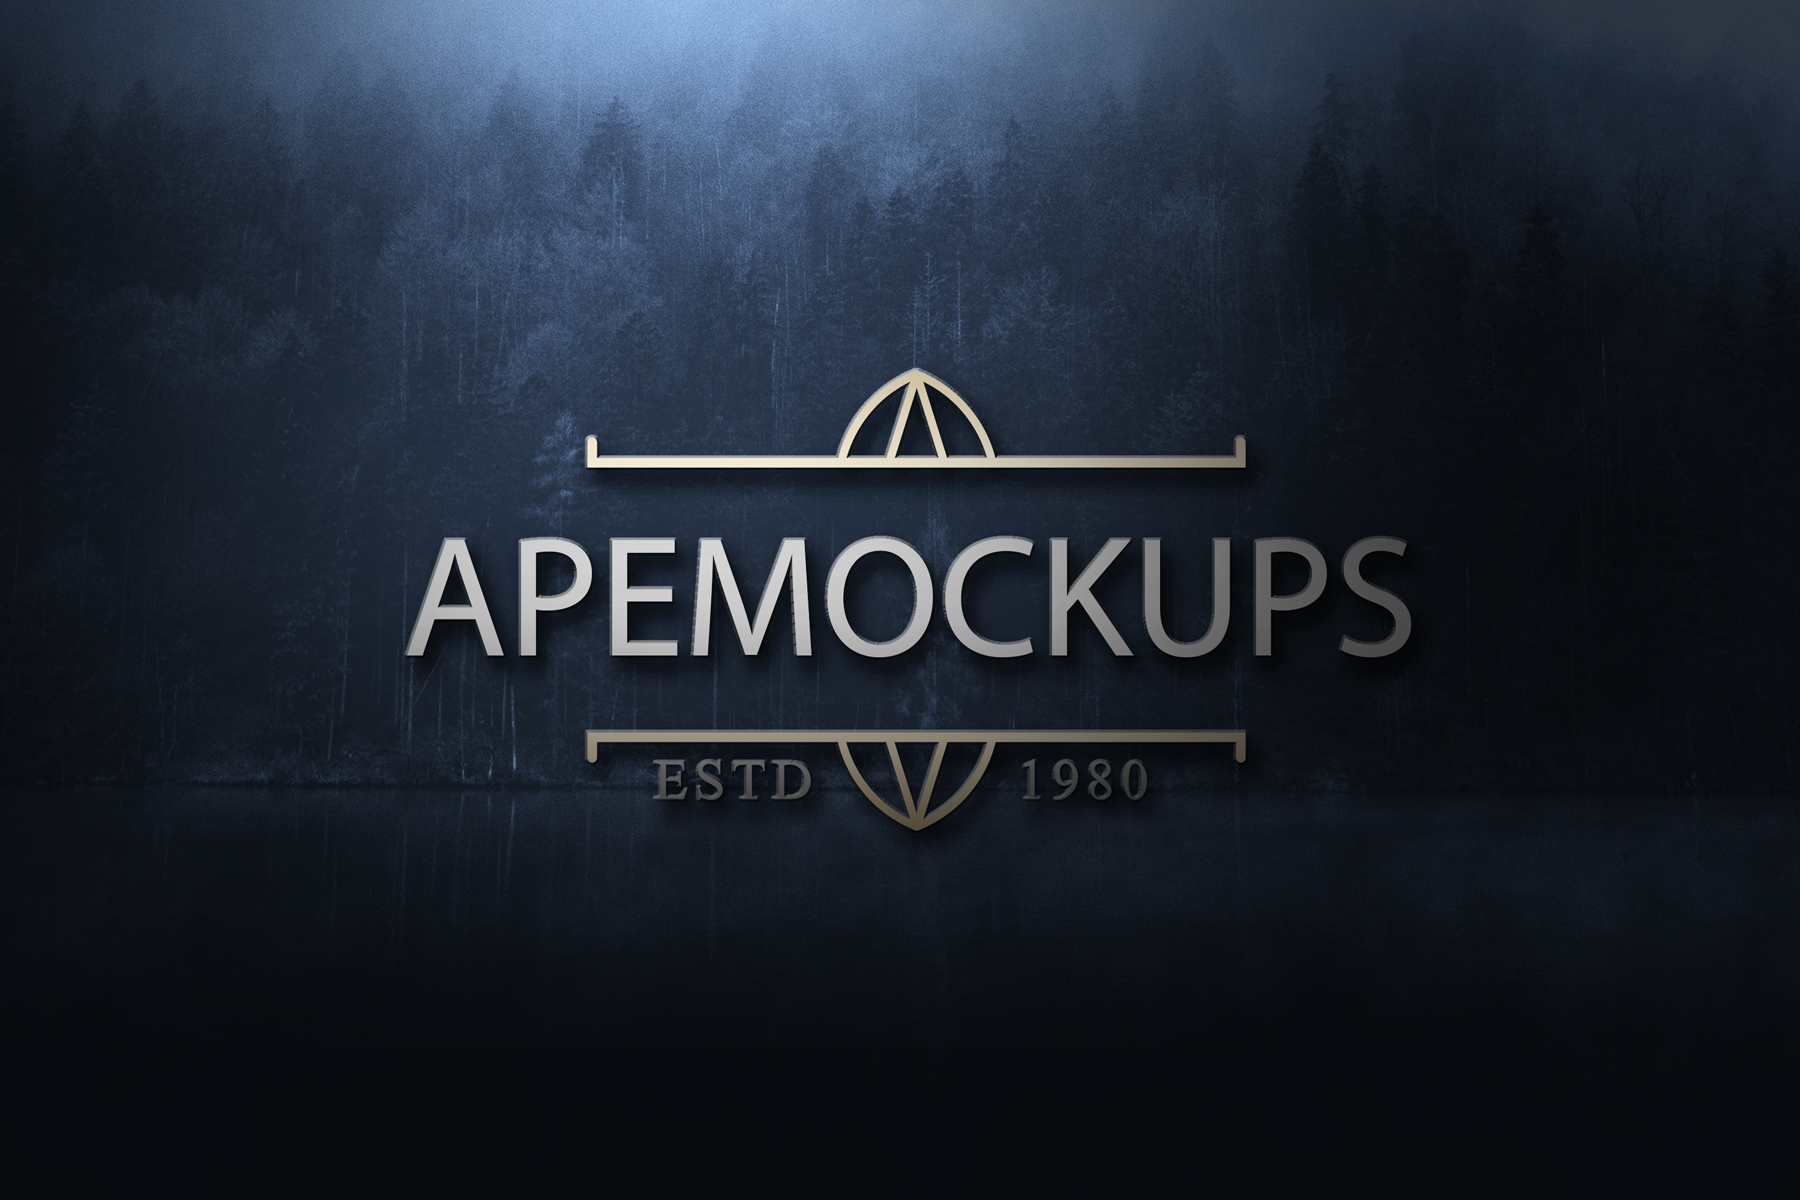 Dark Forest Logo Mockup Psd Free Mockups Best Free Psd Mockups Apemockups